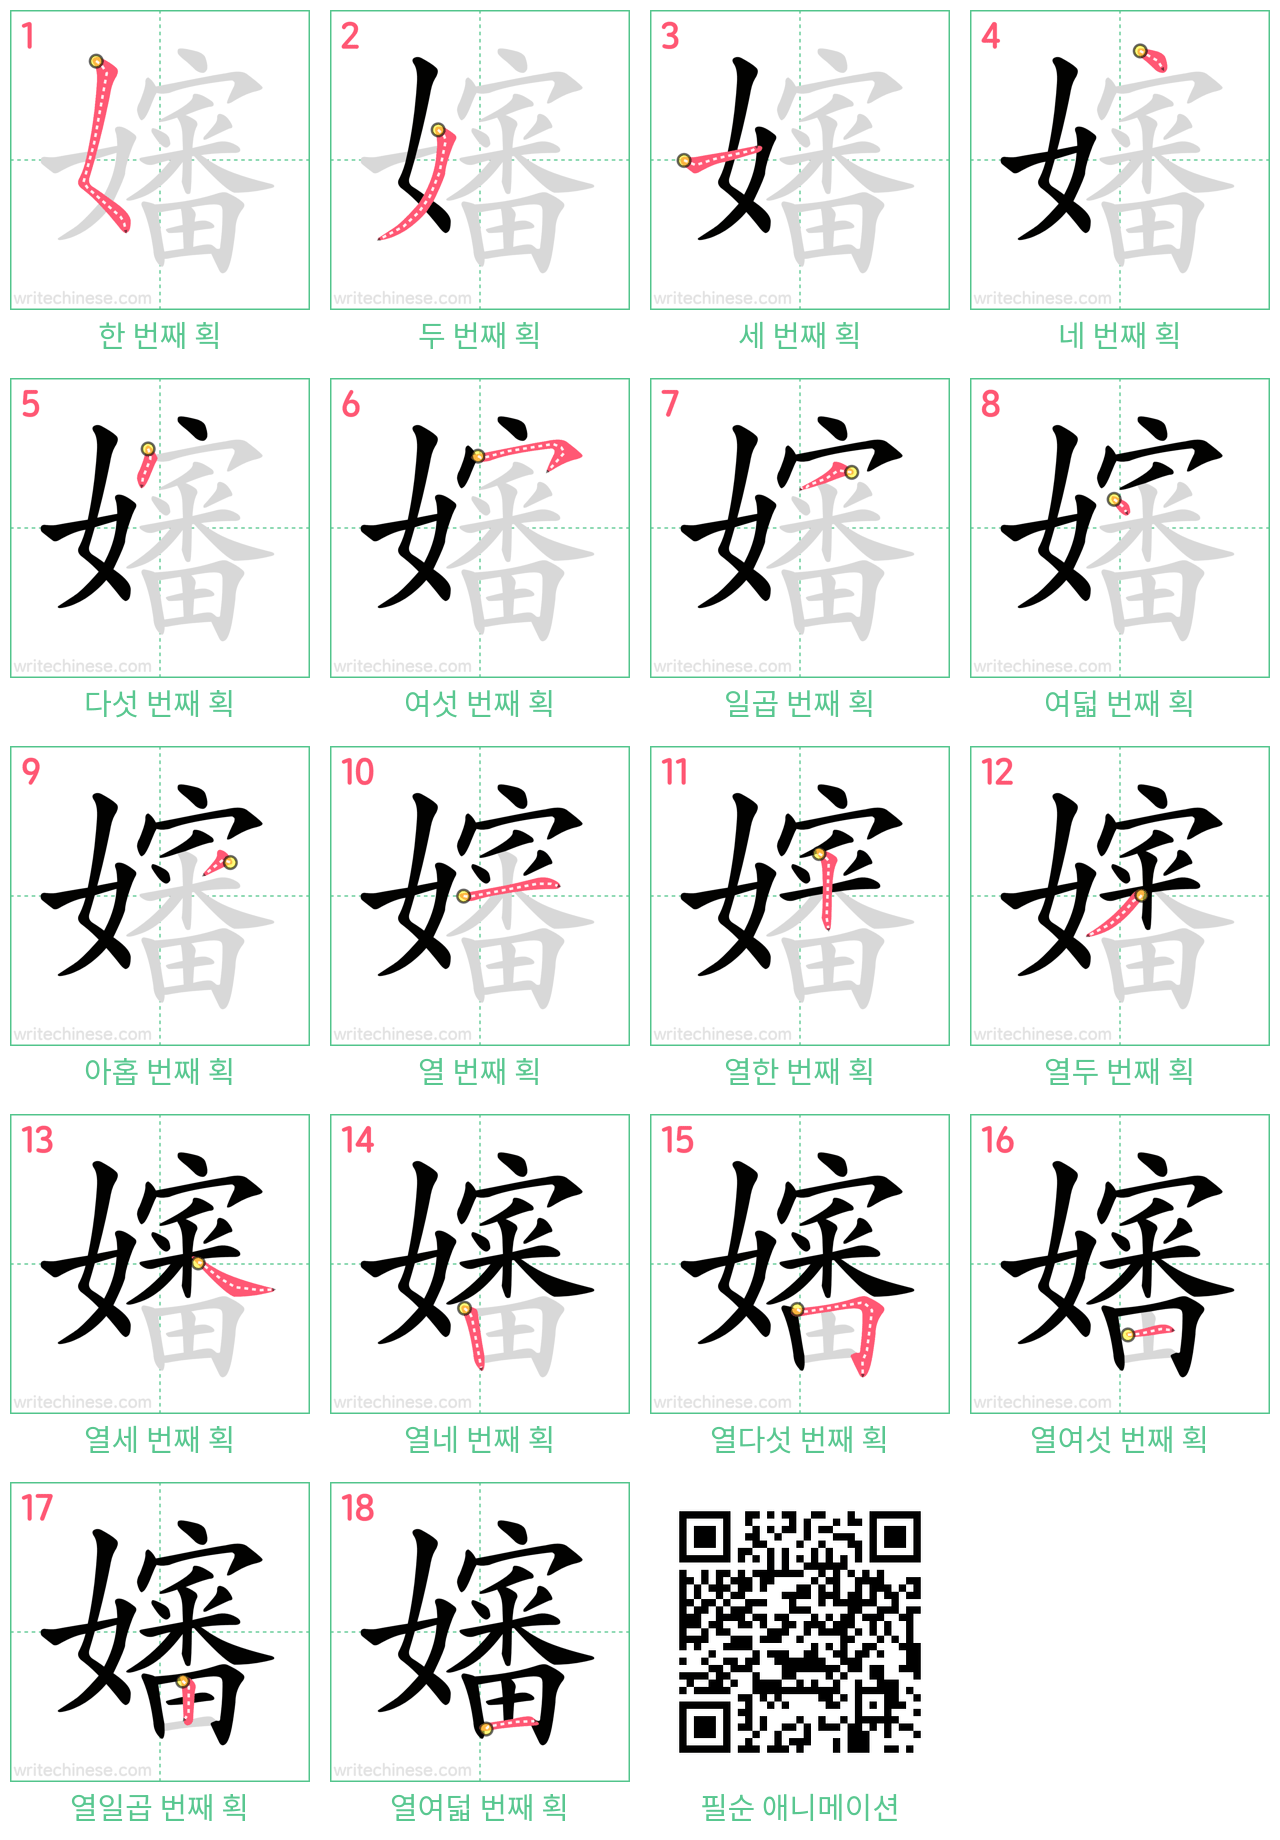 嬸 step-by-step stroke order diagrams